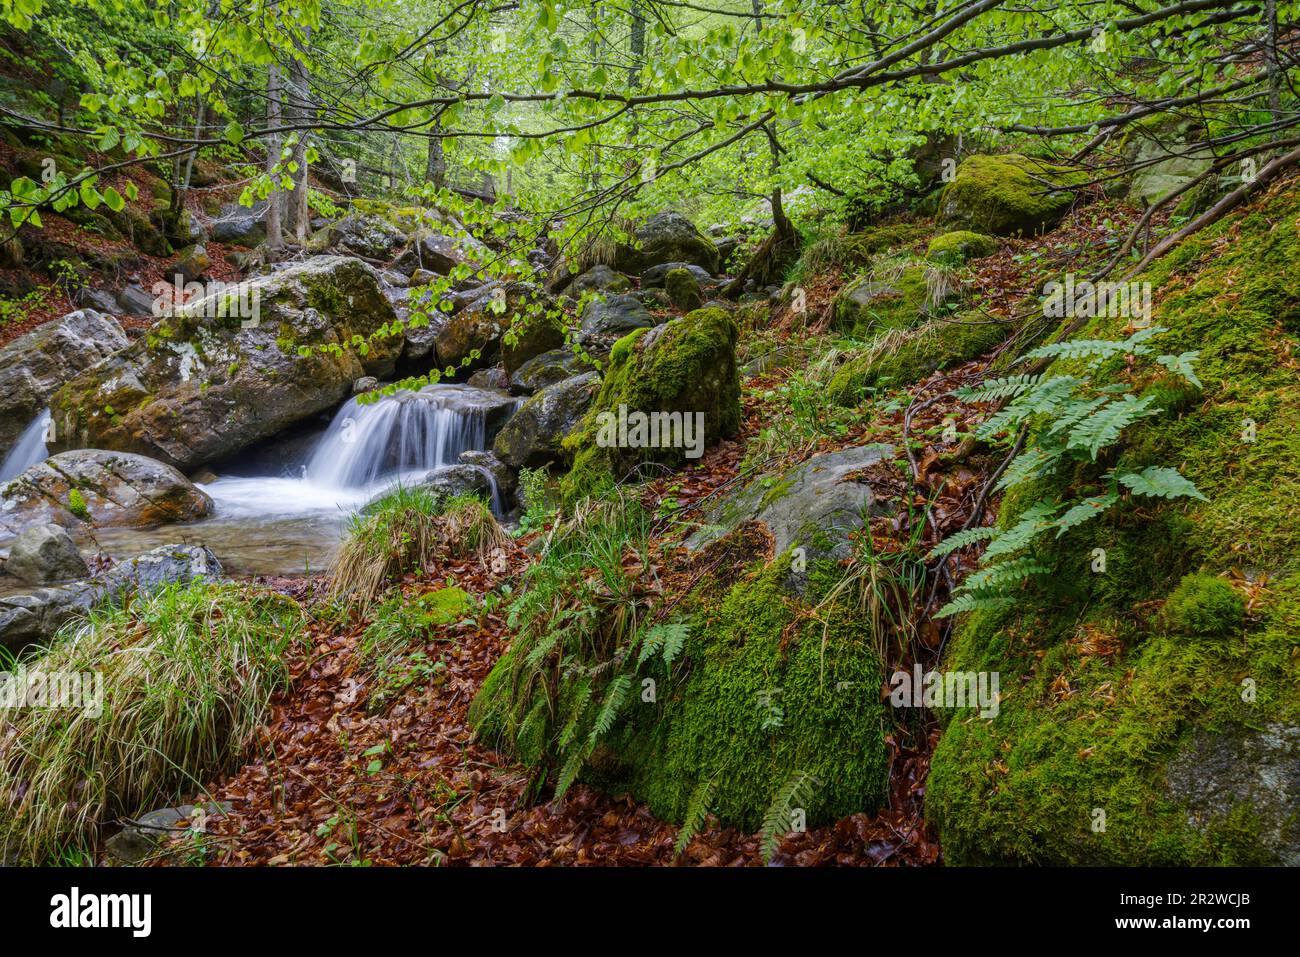 Vista panoramica del fiume che scorre nella foresta, Parco Naturale Regionale delle Alpi Ligure, Italia Foto Stock